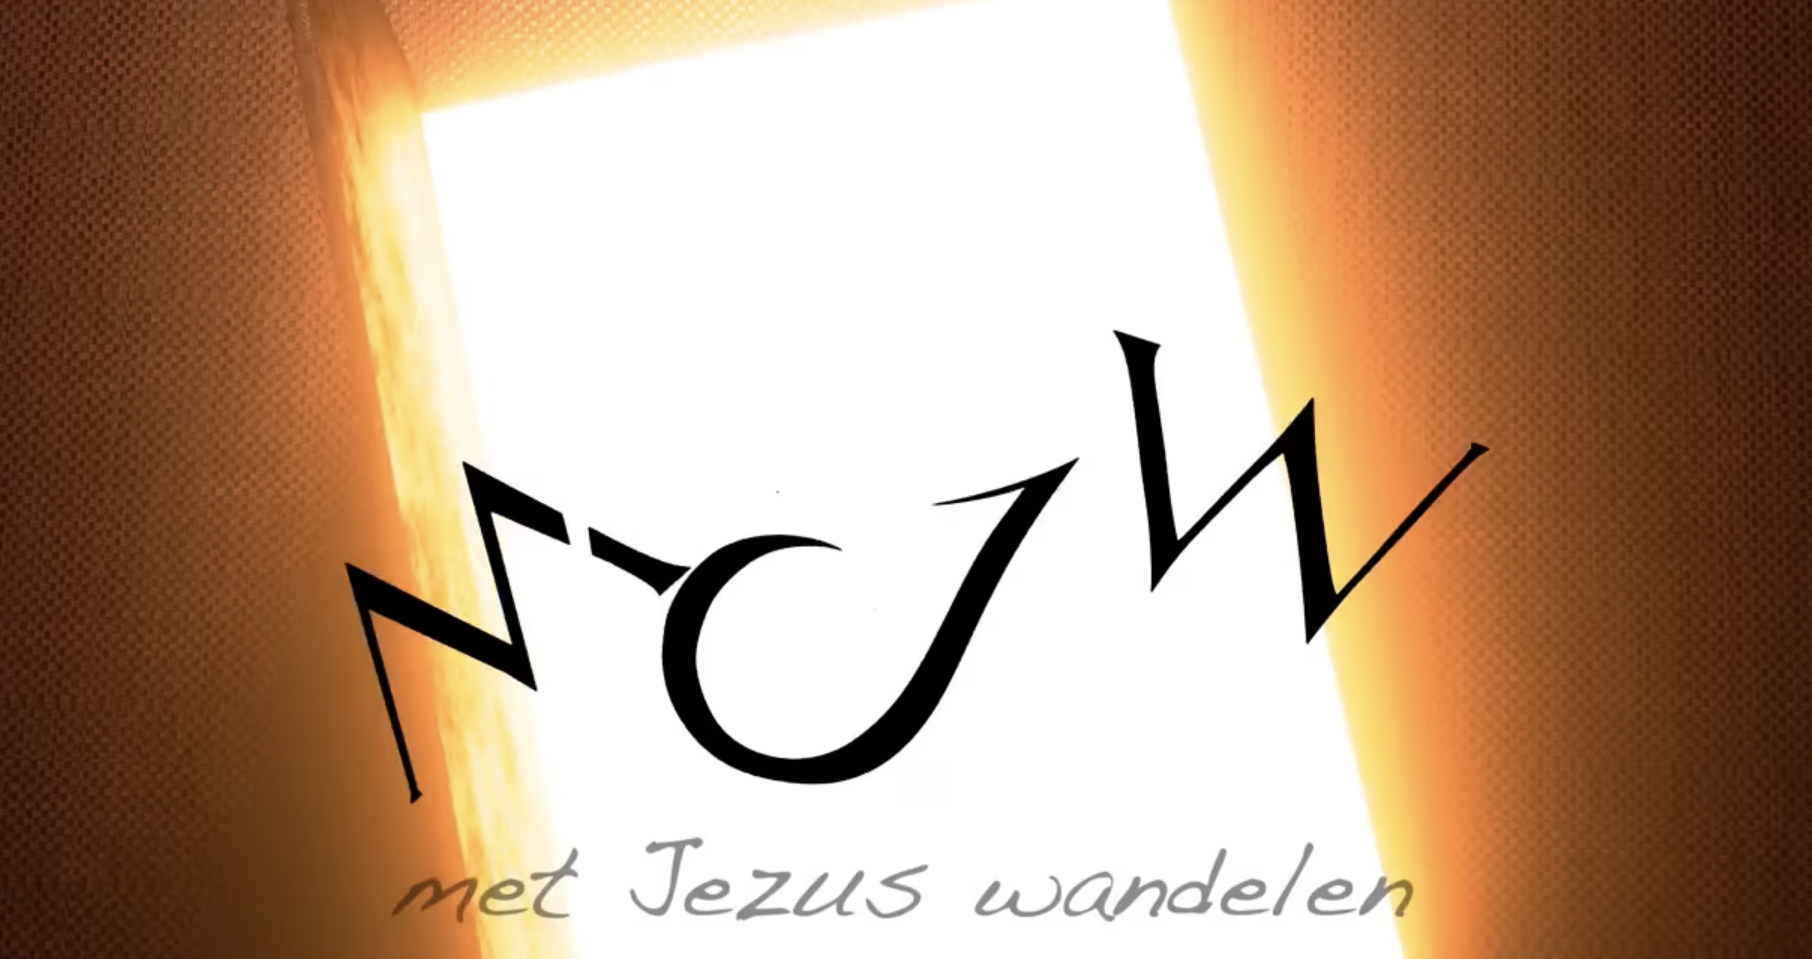 Jezus daalde neer op aard – Maurits Jan Westhoven & Lennie Honcoop